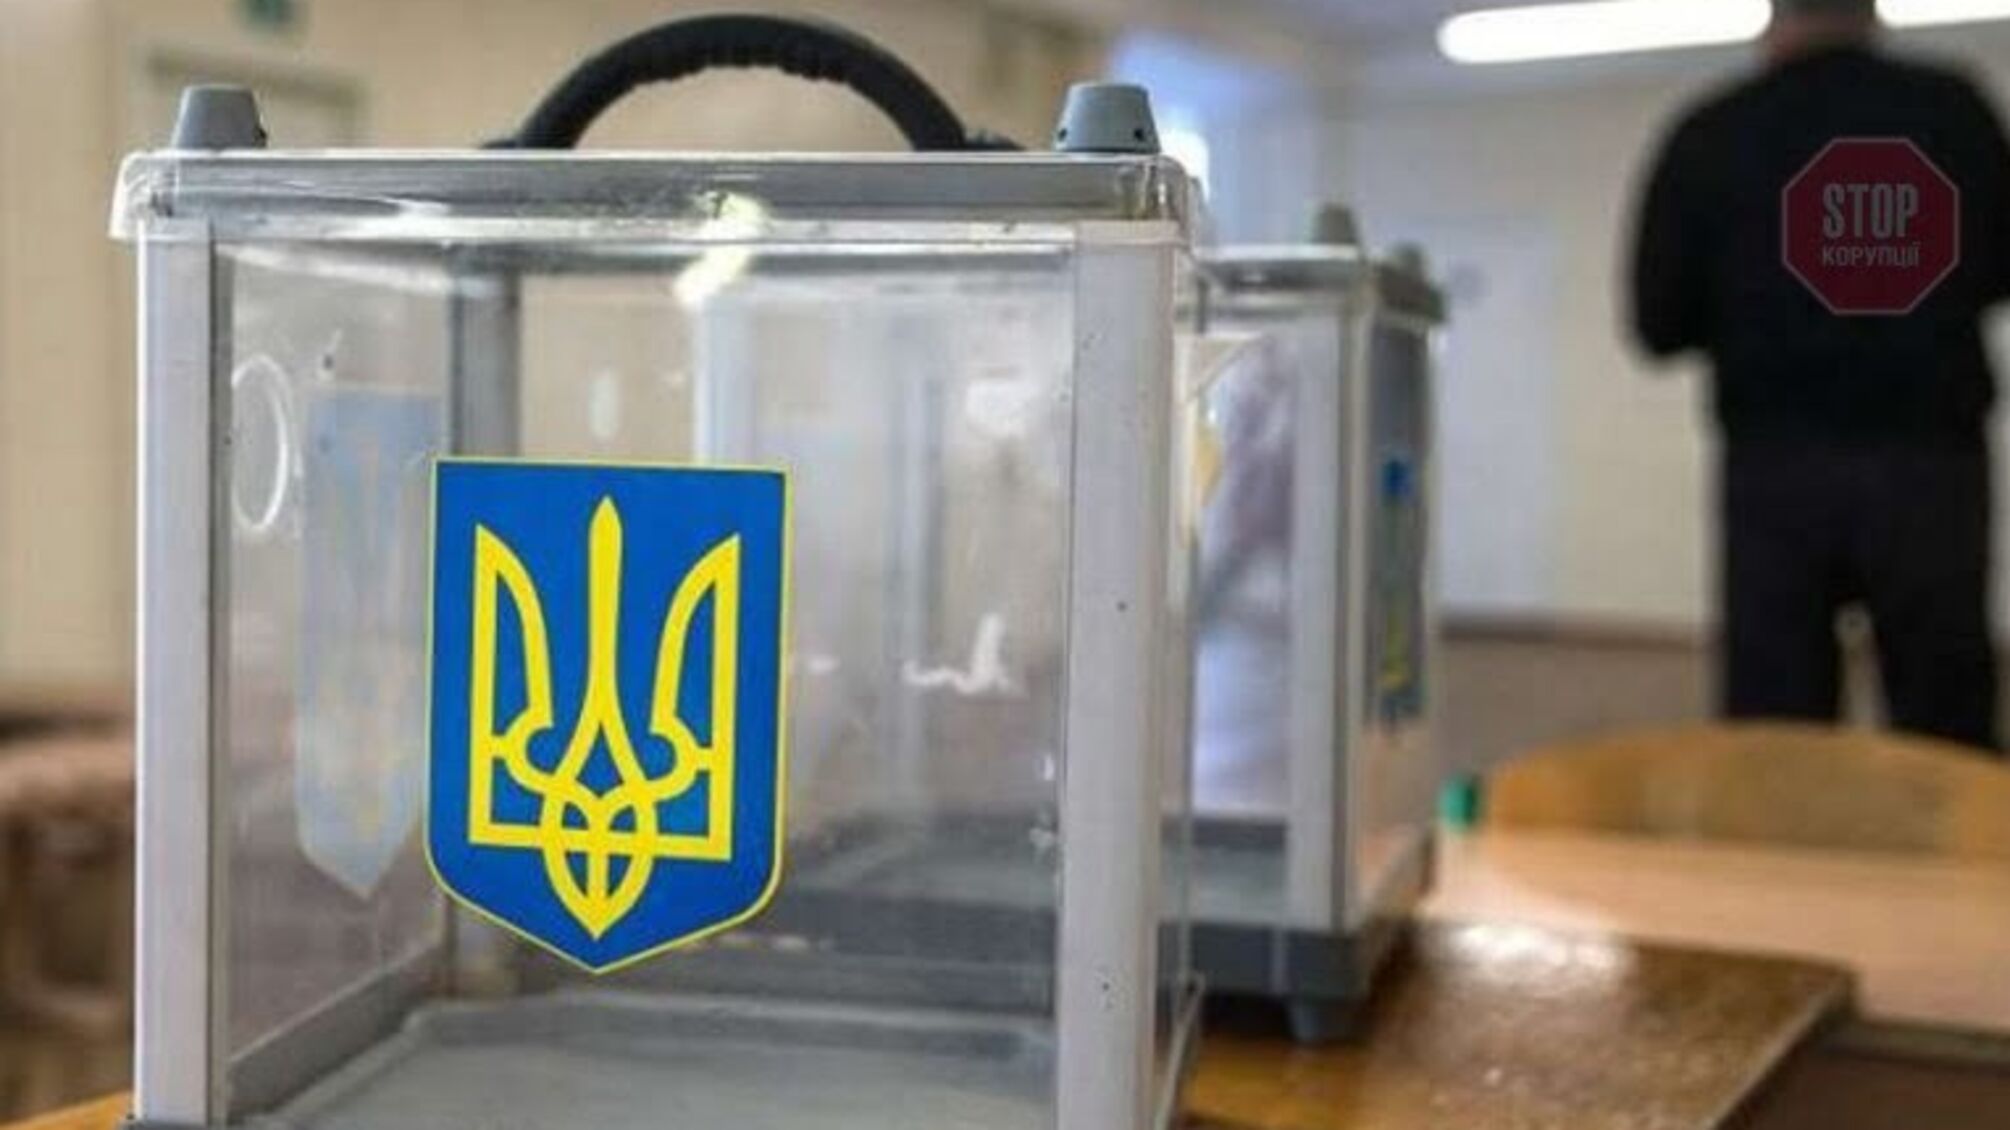 Верховной Раде рекомендуют назначить выборы мэра Харькова на 31 октября